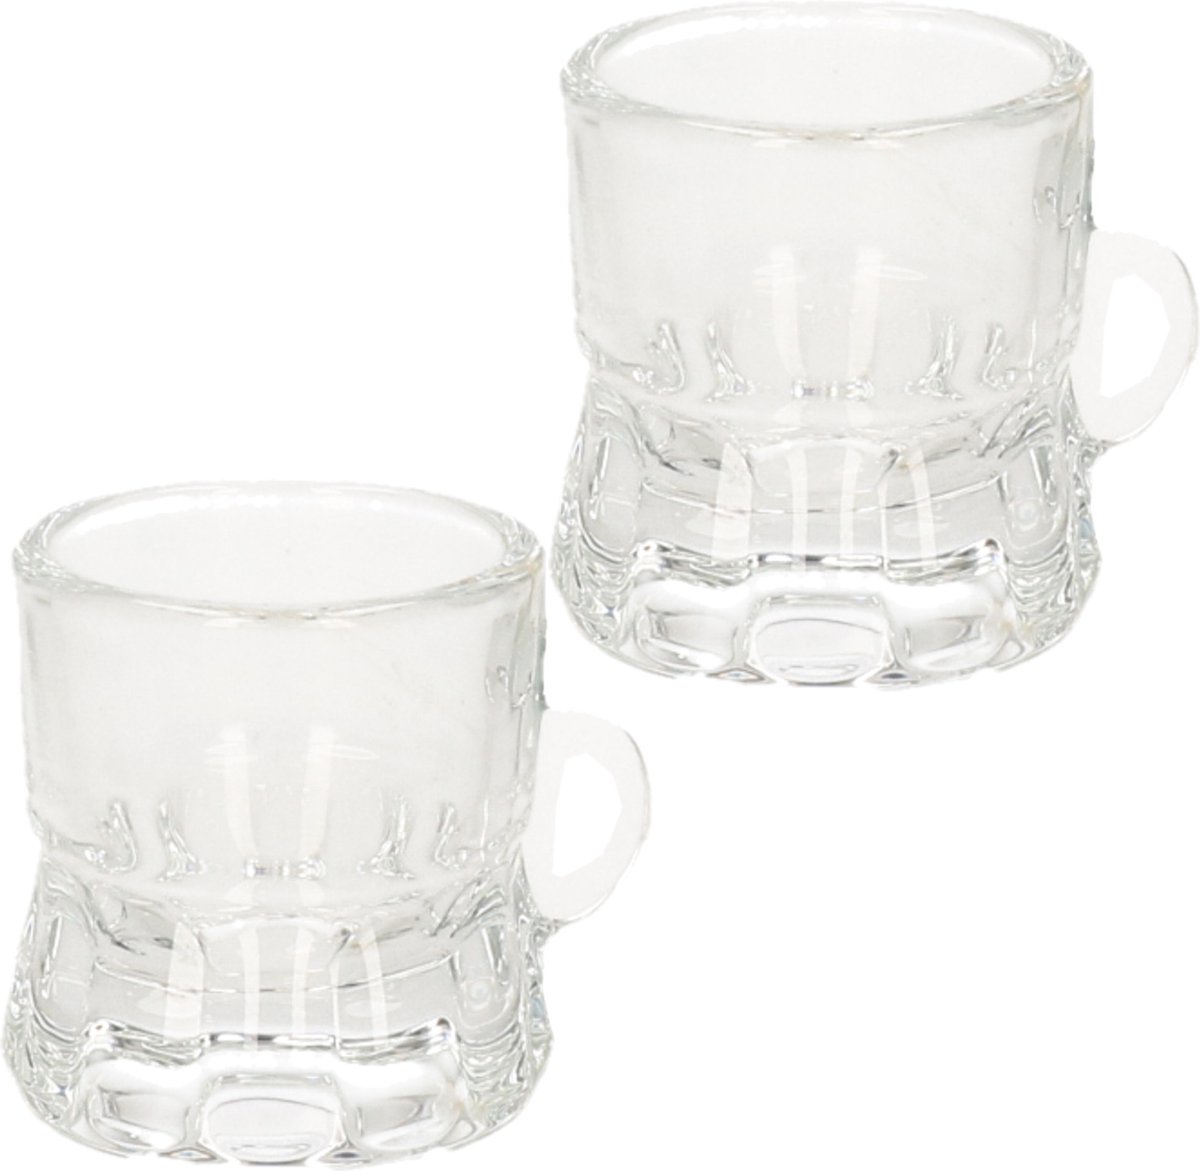 60x Shotglas/borrelglas bierpul glaasjes/glazen met handvat van 2cl - Party glazen